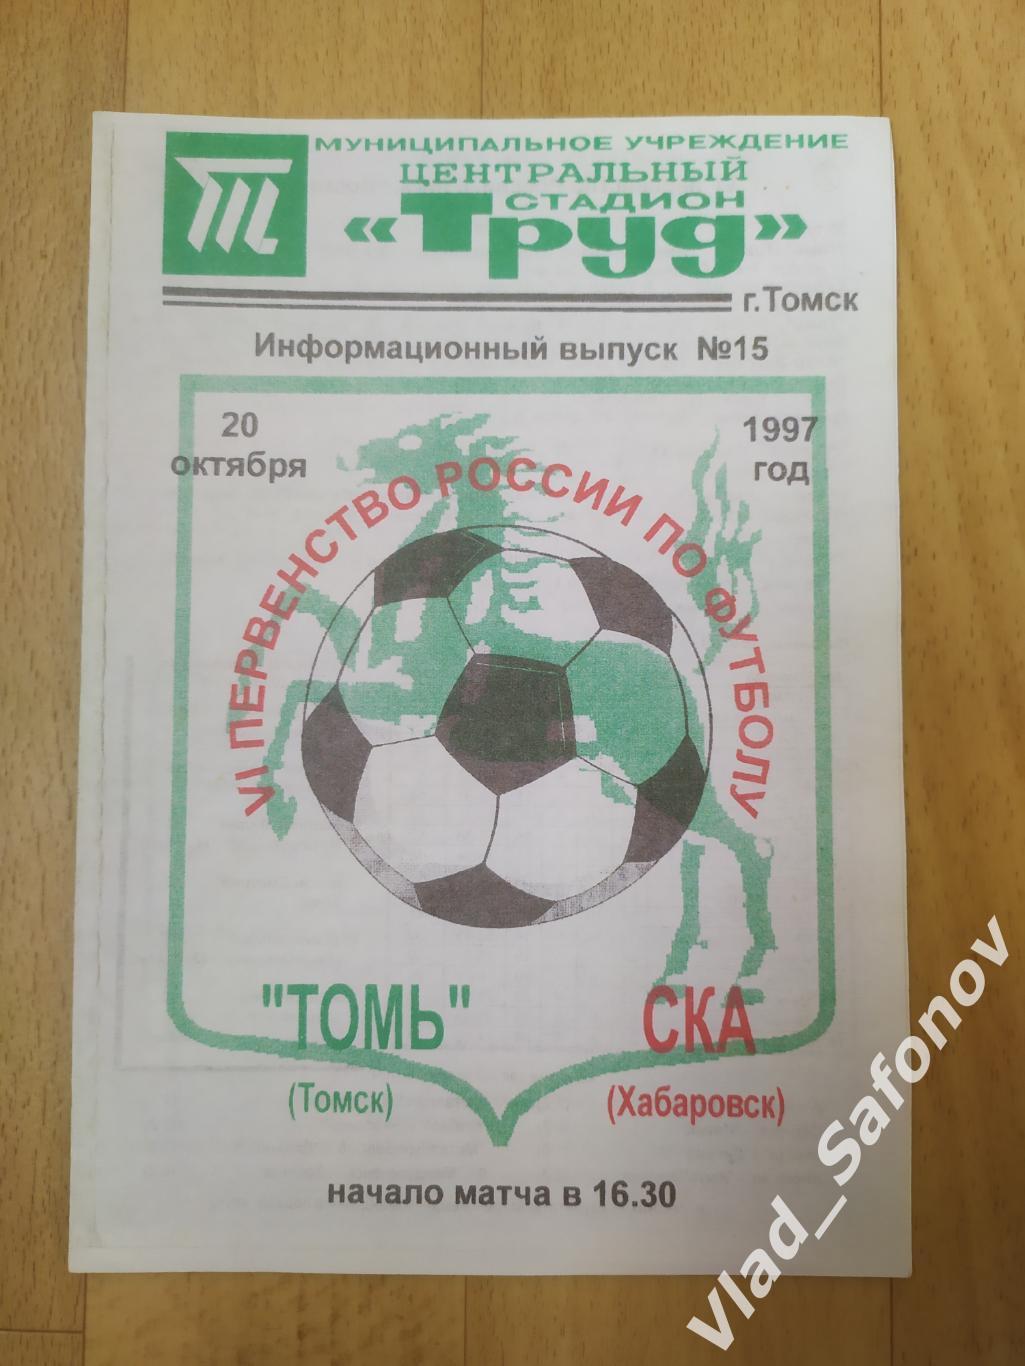 Томь(Томск) - Ска(Хабаровск). 2 лига. 20/10/1997